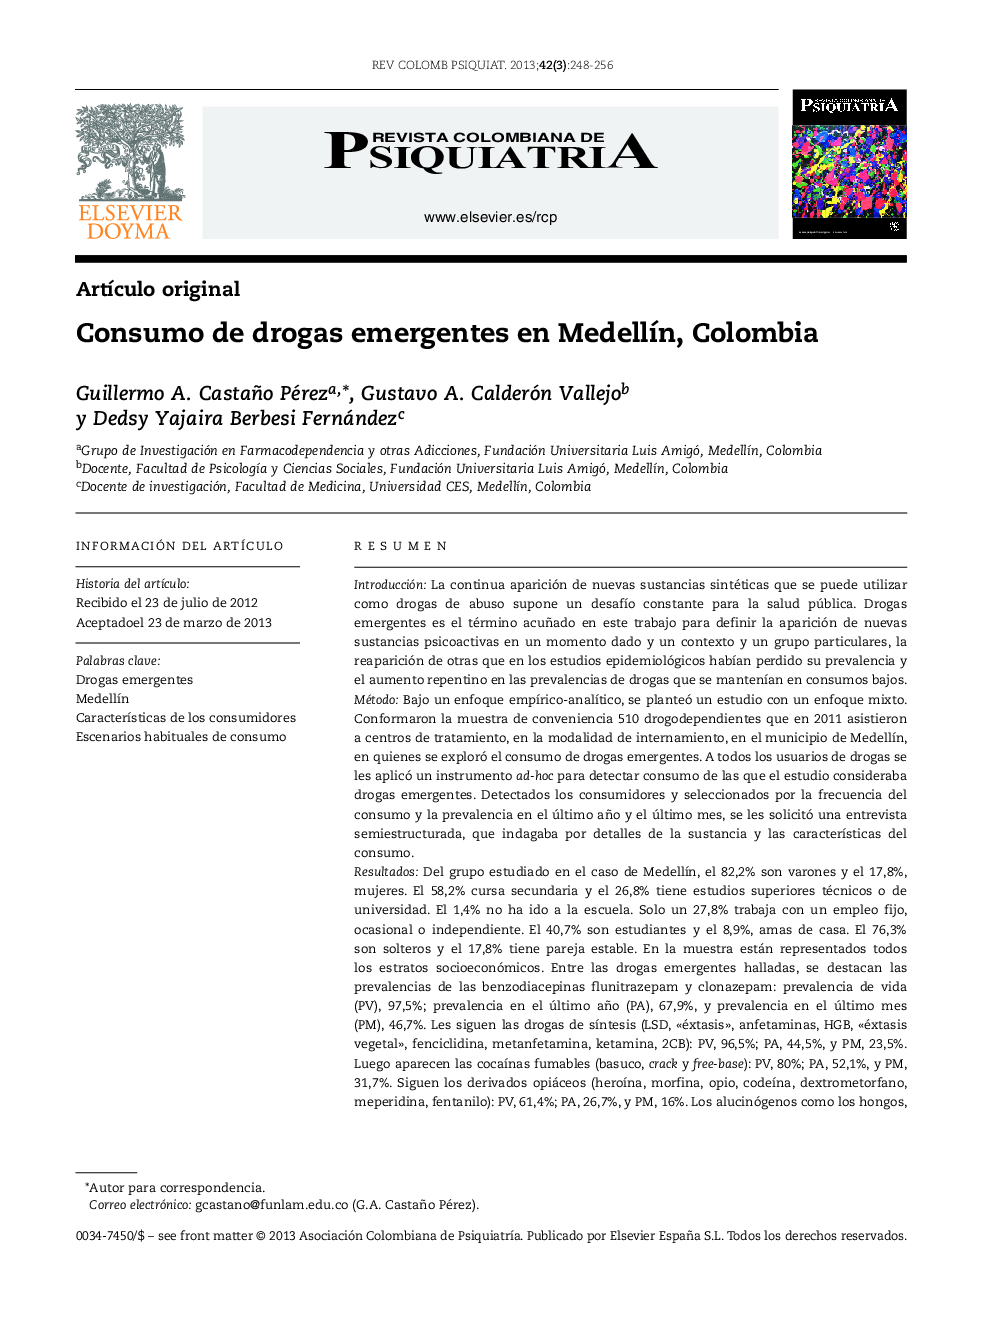 Consumo de drogas emergentes en MedellÃ­n, Colombia